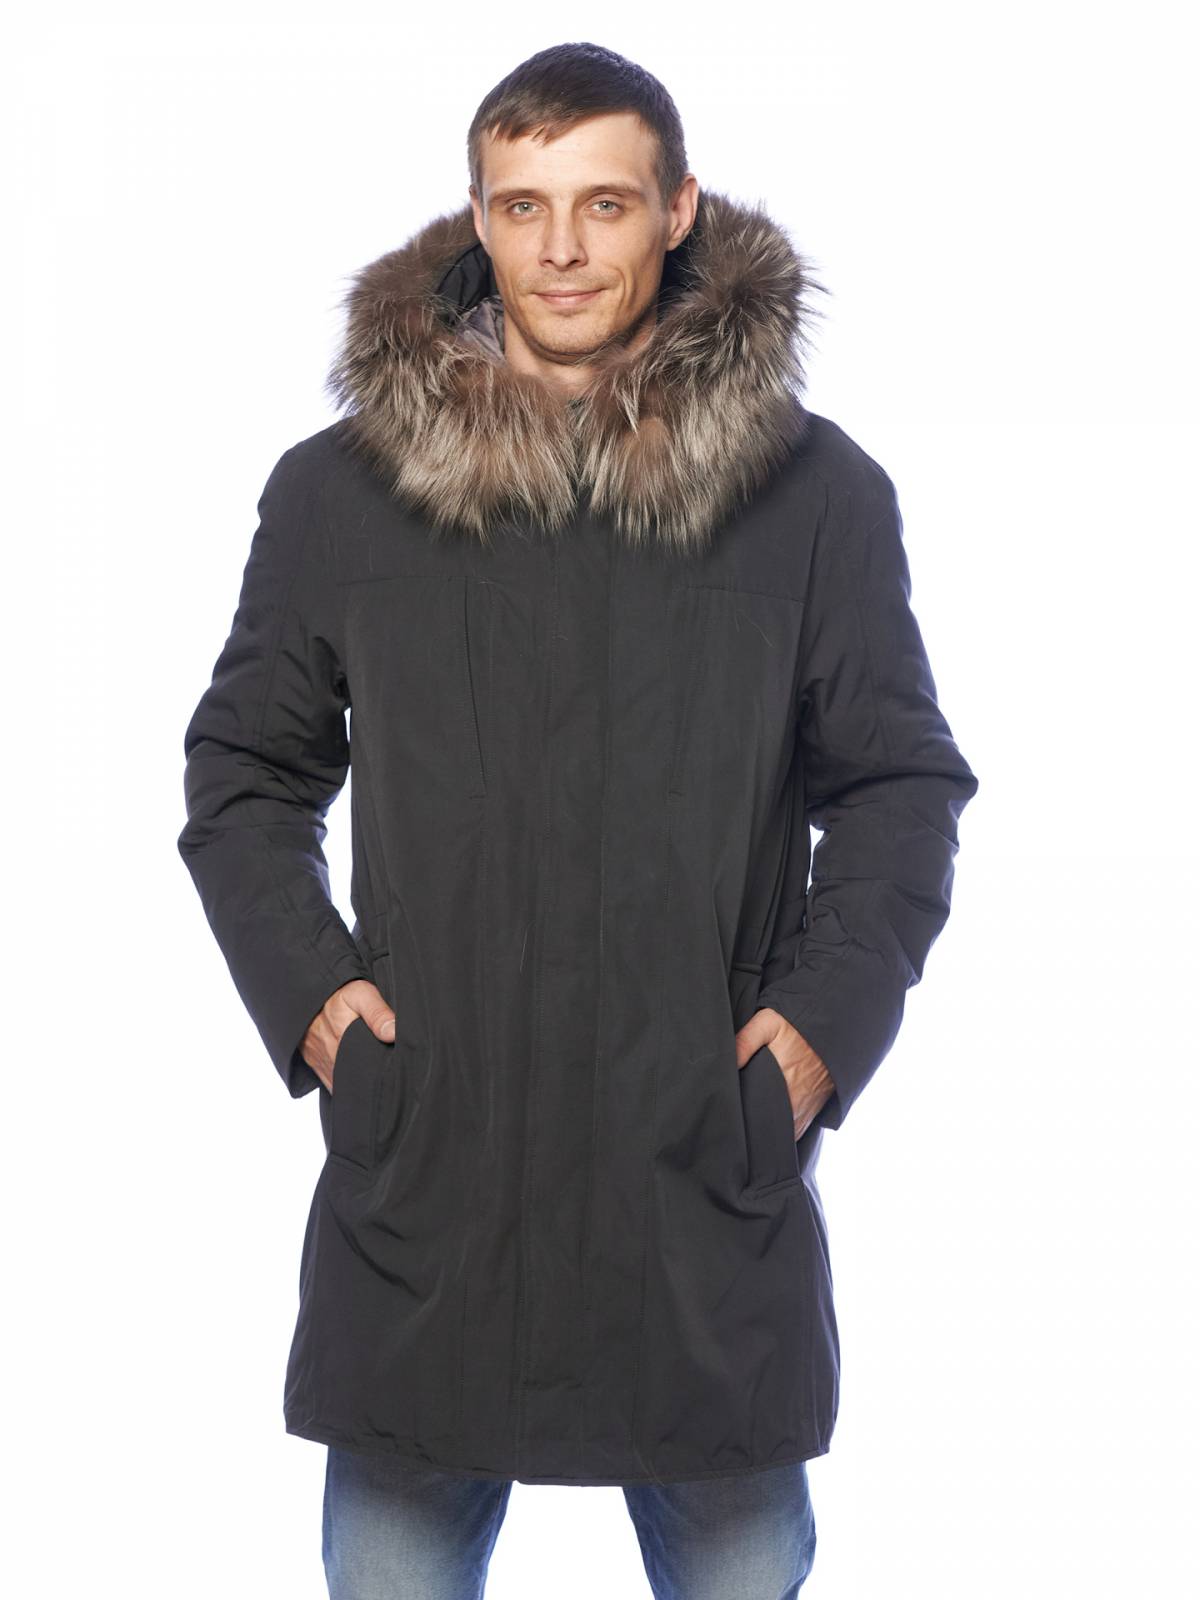 Зимняя куртка мужская Clasna 3580 серая 52 RU